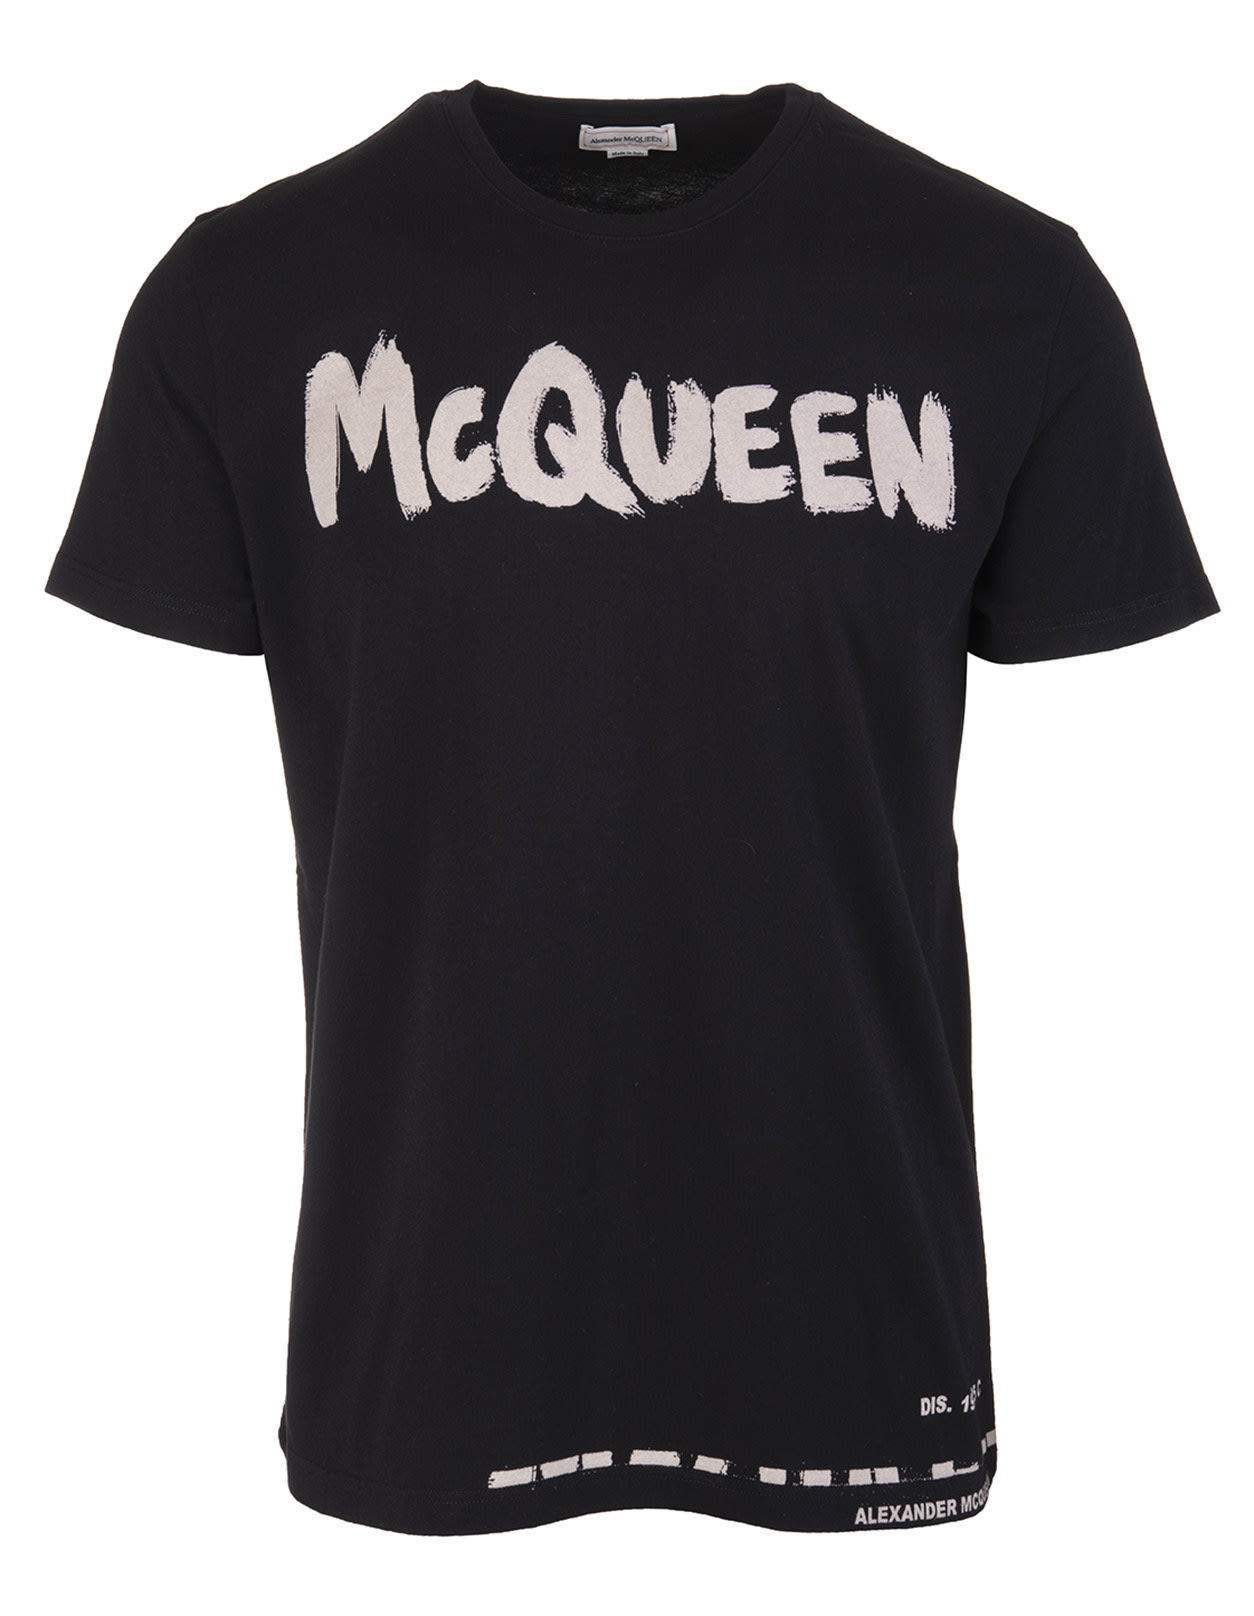 Alexander McQueen Man Black Mcqueen Graffiti T-shirt